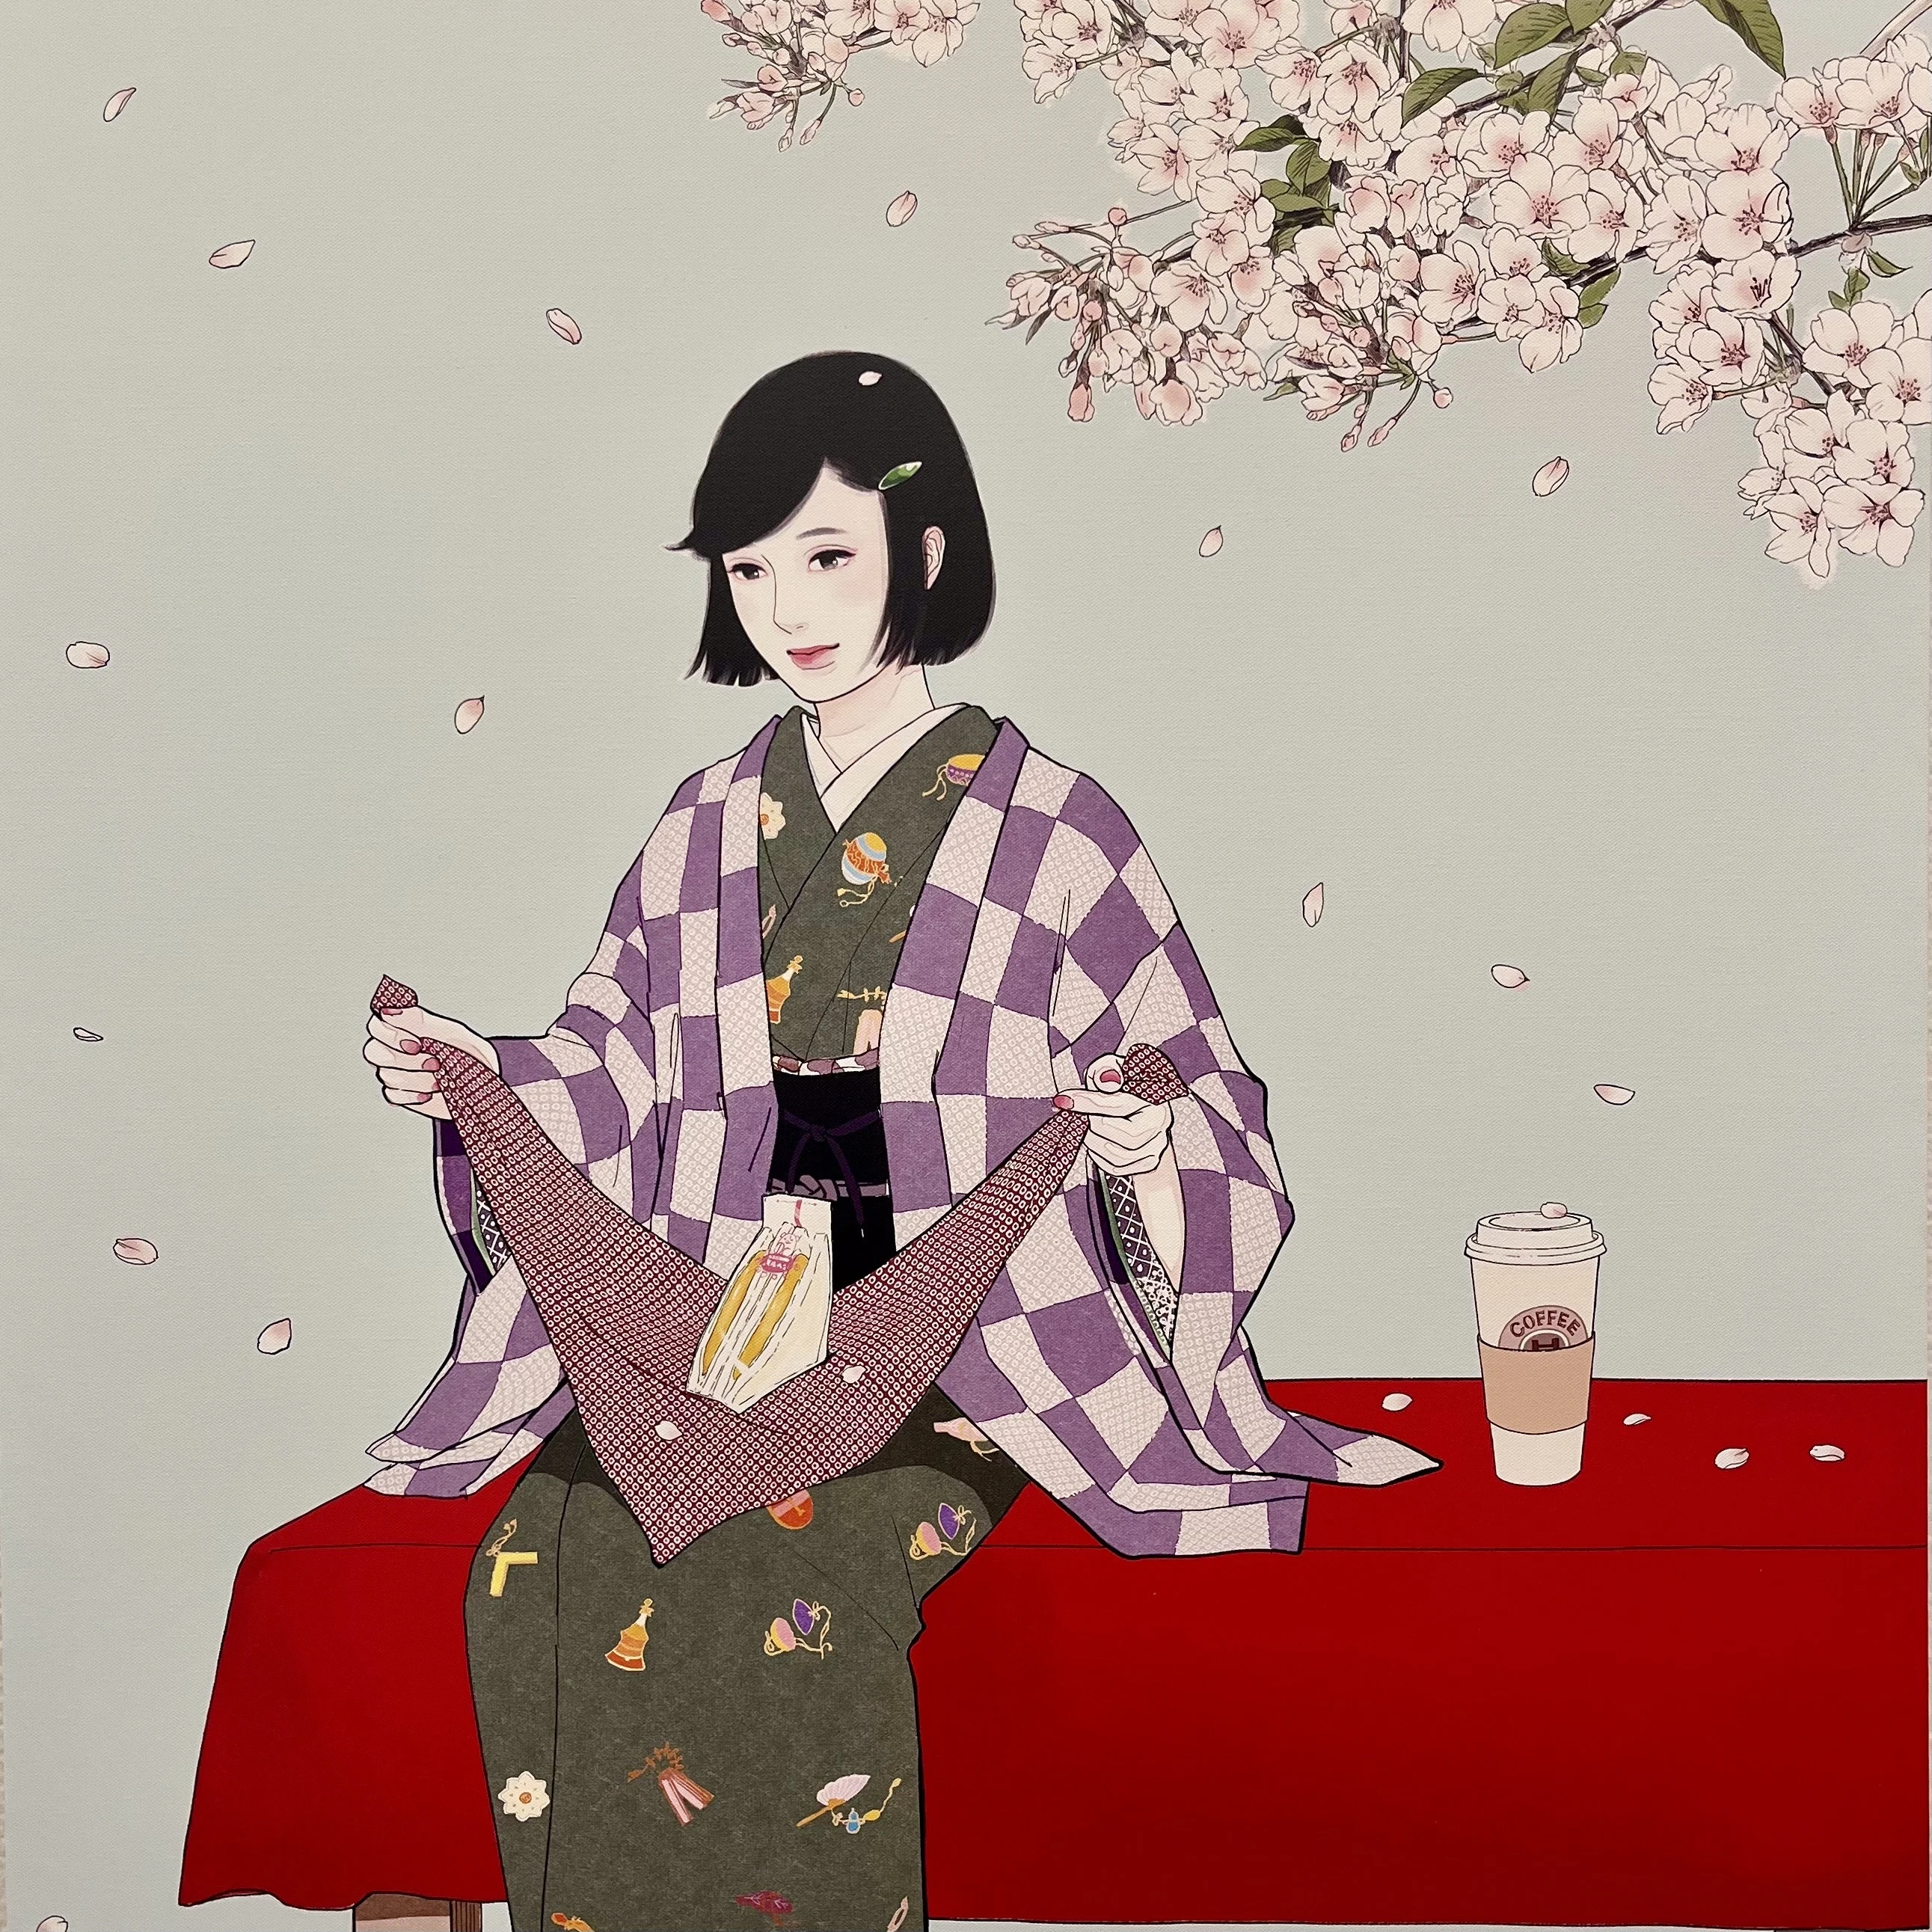 【現代アート】東村アキコのNEO美人画の世界_1_3-2